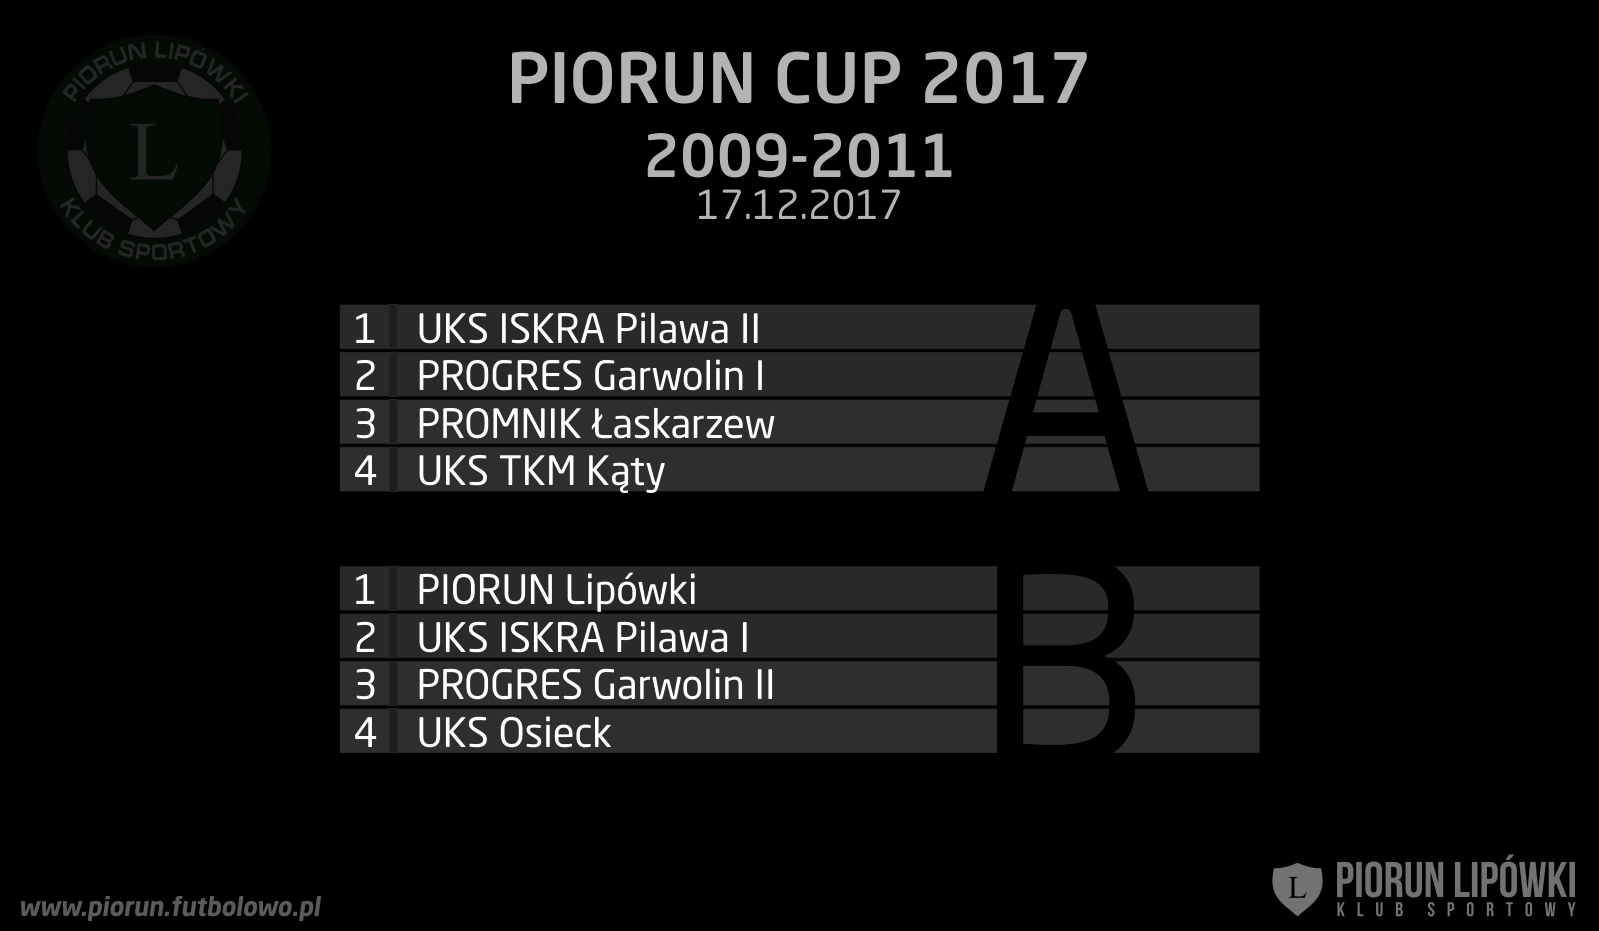 PIORUN CUP 2009 - podział na grupy